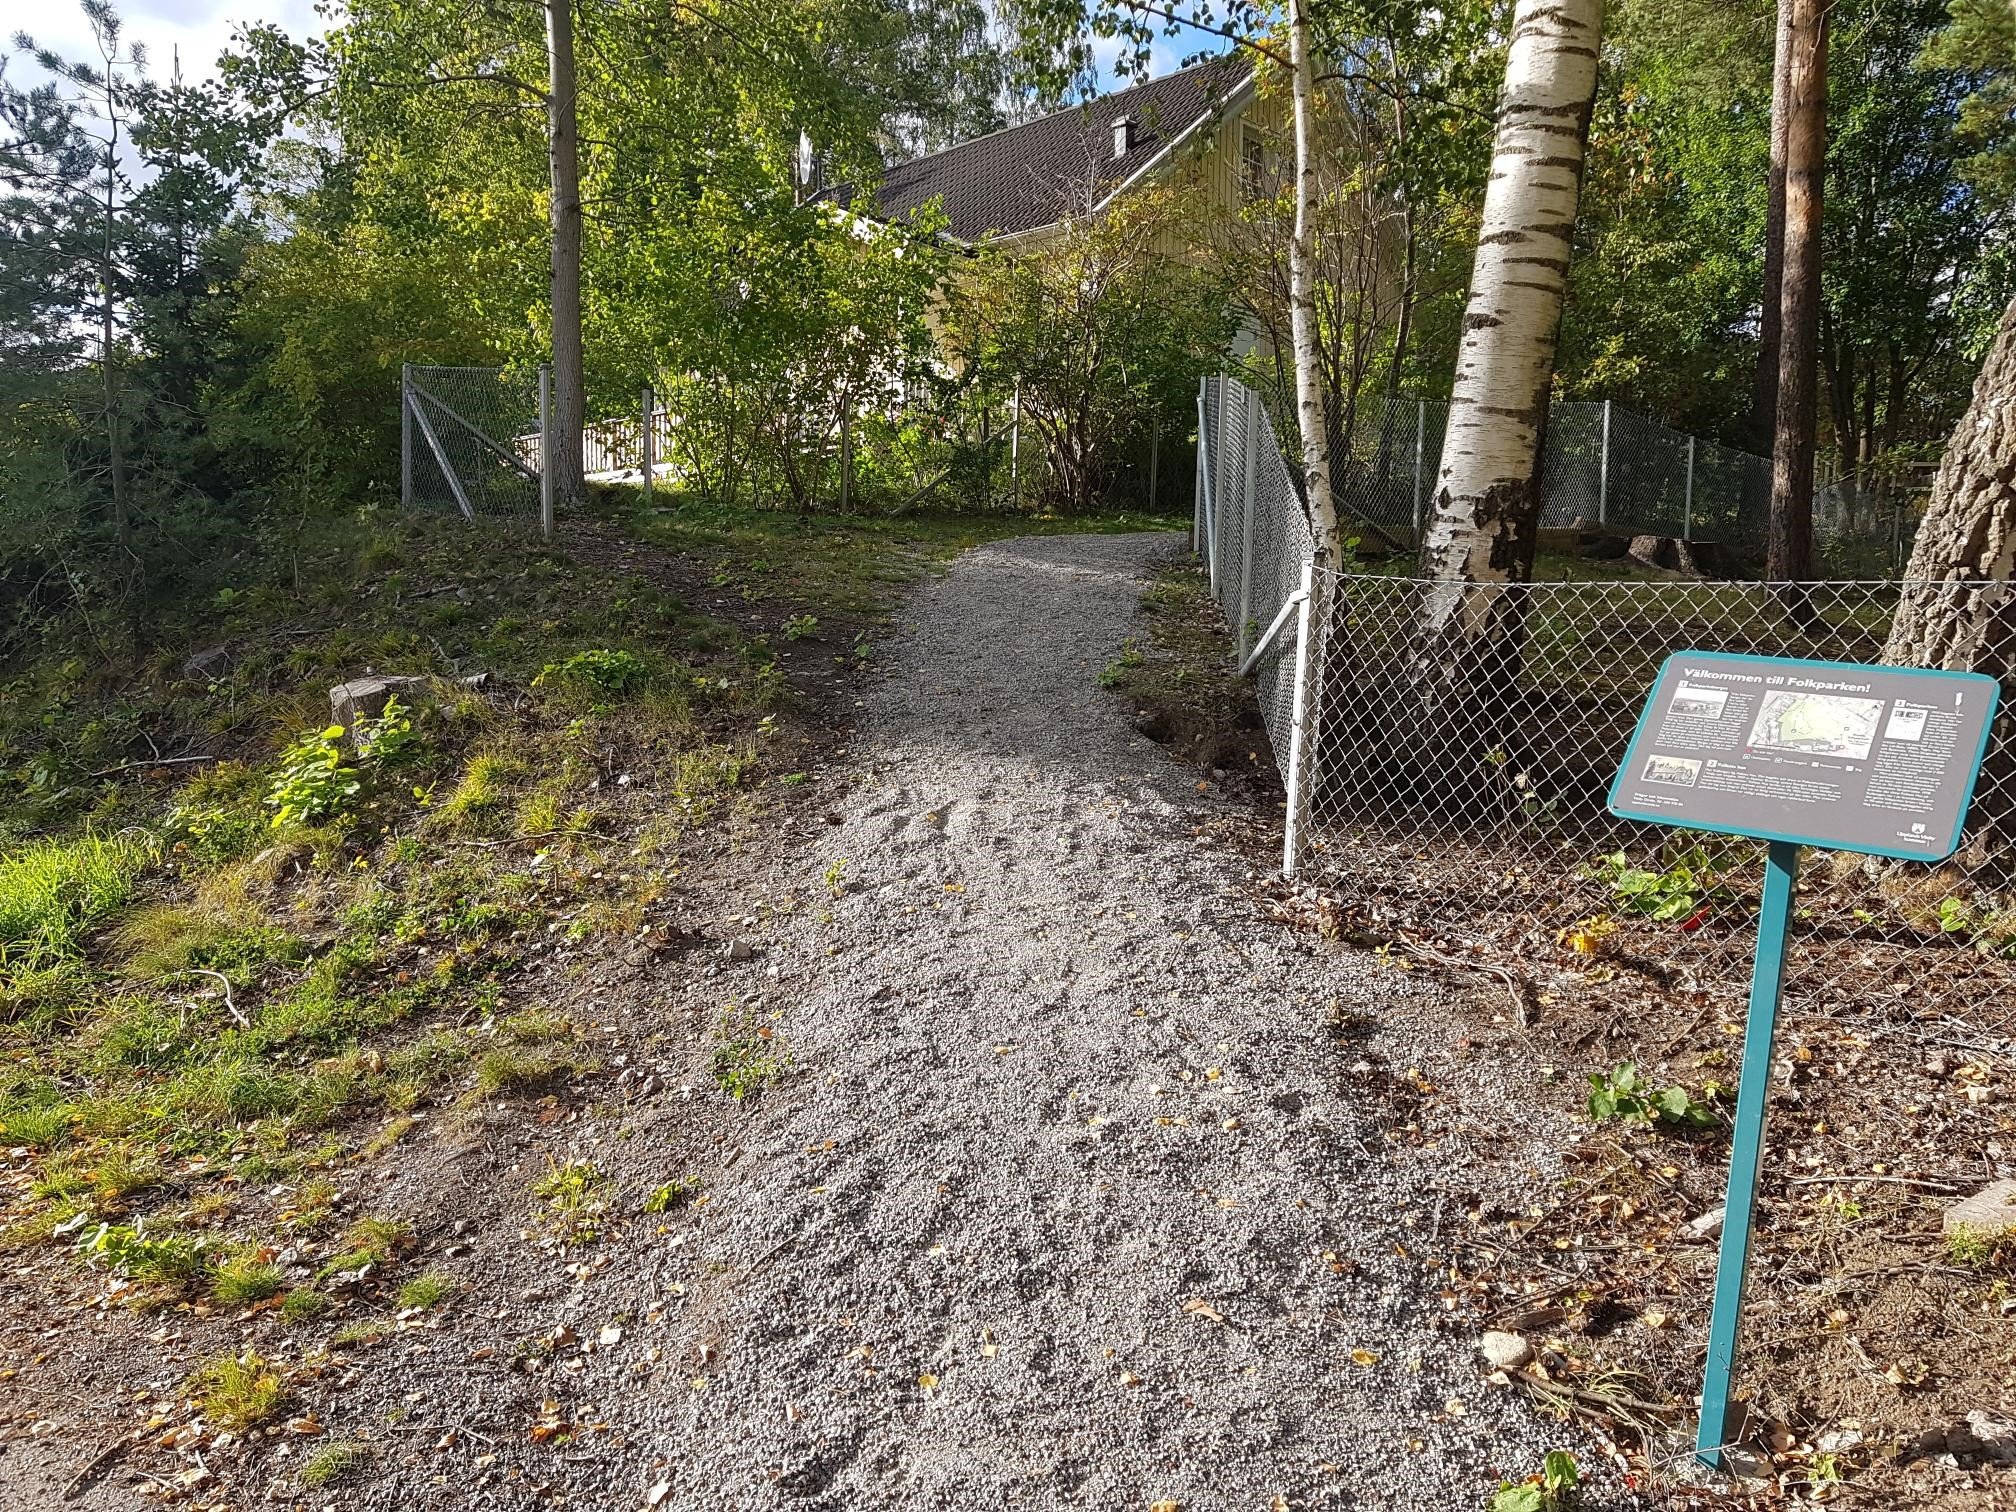 Entrén vid Furubergsvägen. Följ grusgången fram till grinden till parken och hundrastgården. Välj denna entré om du vill ha en mindre fysiskt krävande promenad upp till Folkparksberget.